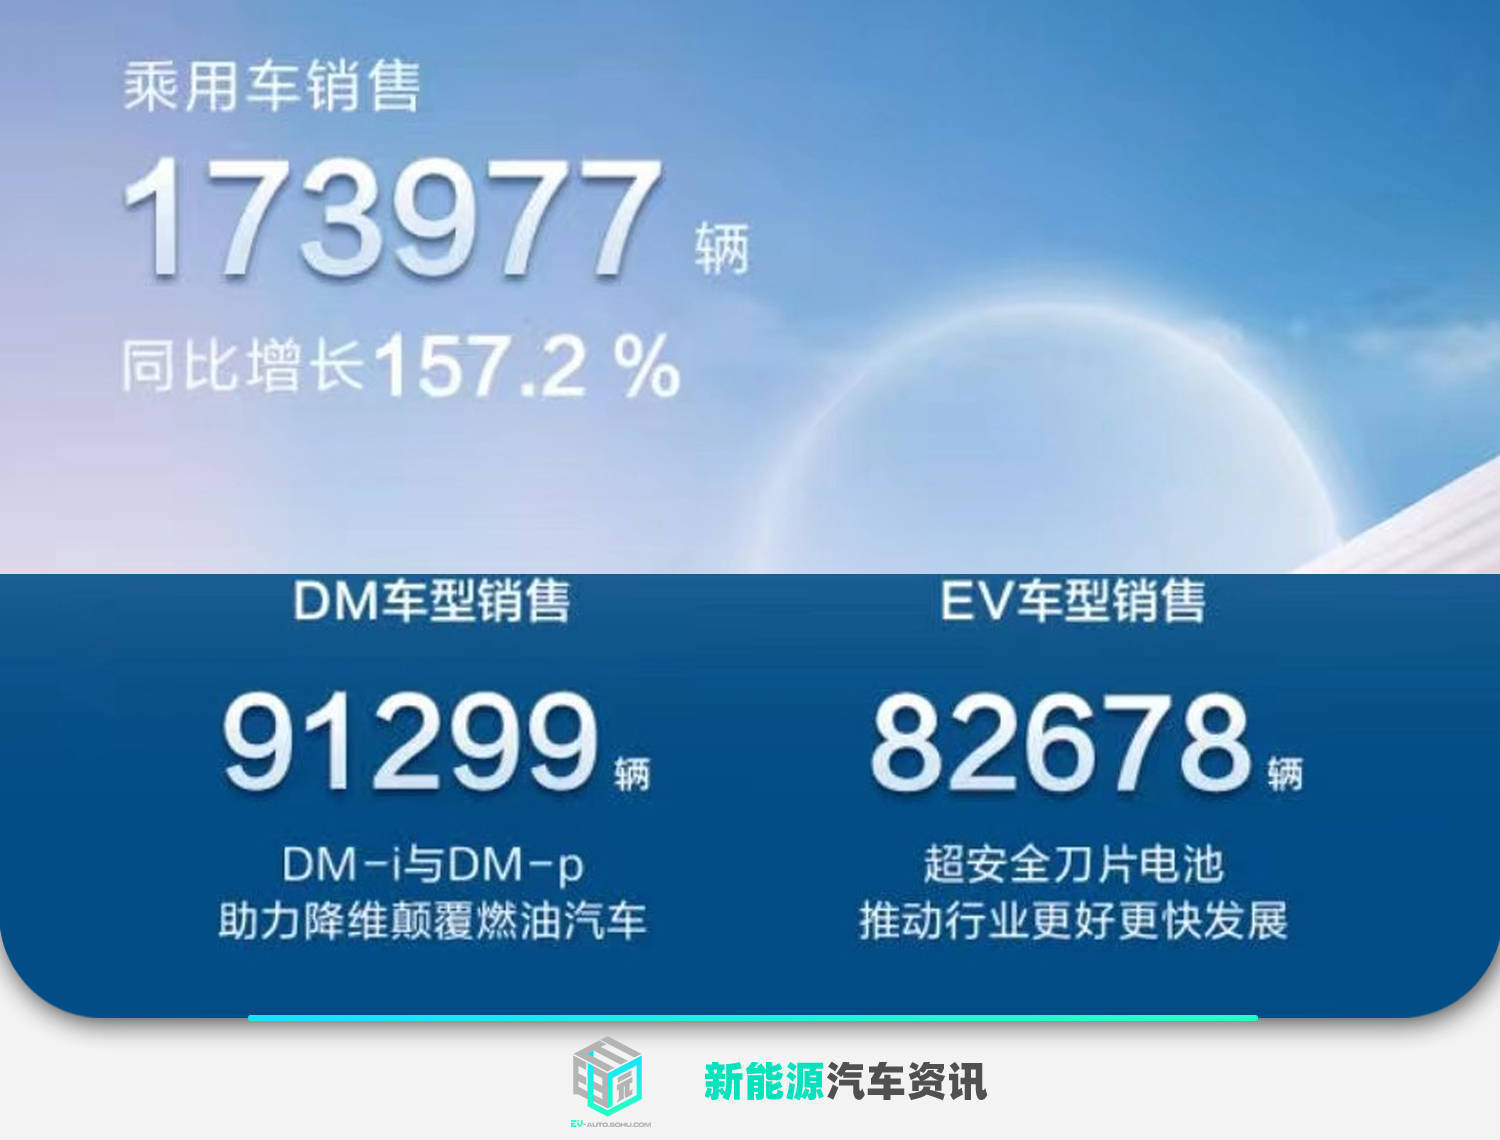 173,977台
！長安汽車正式發布8月節能環保商用車銷售量統計數據